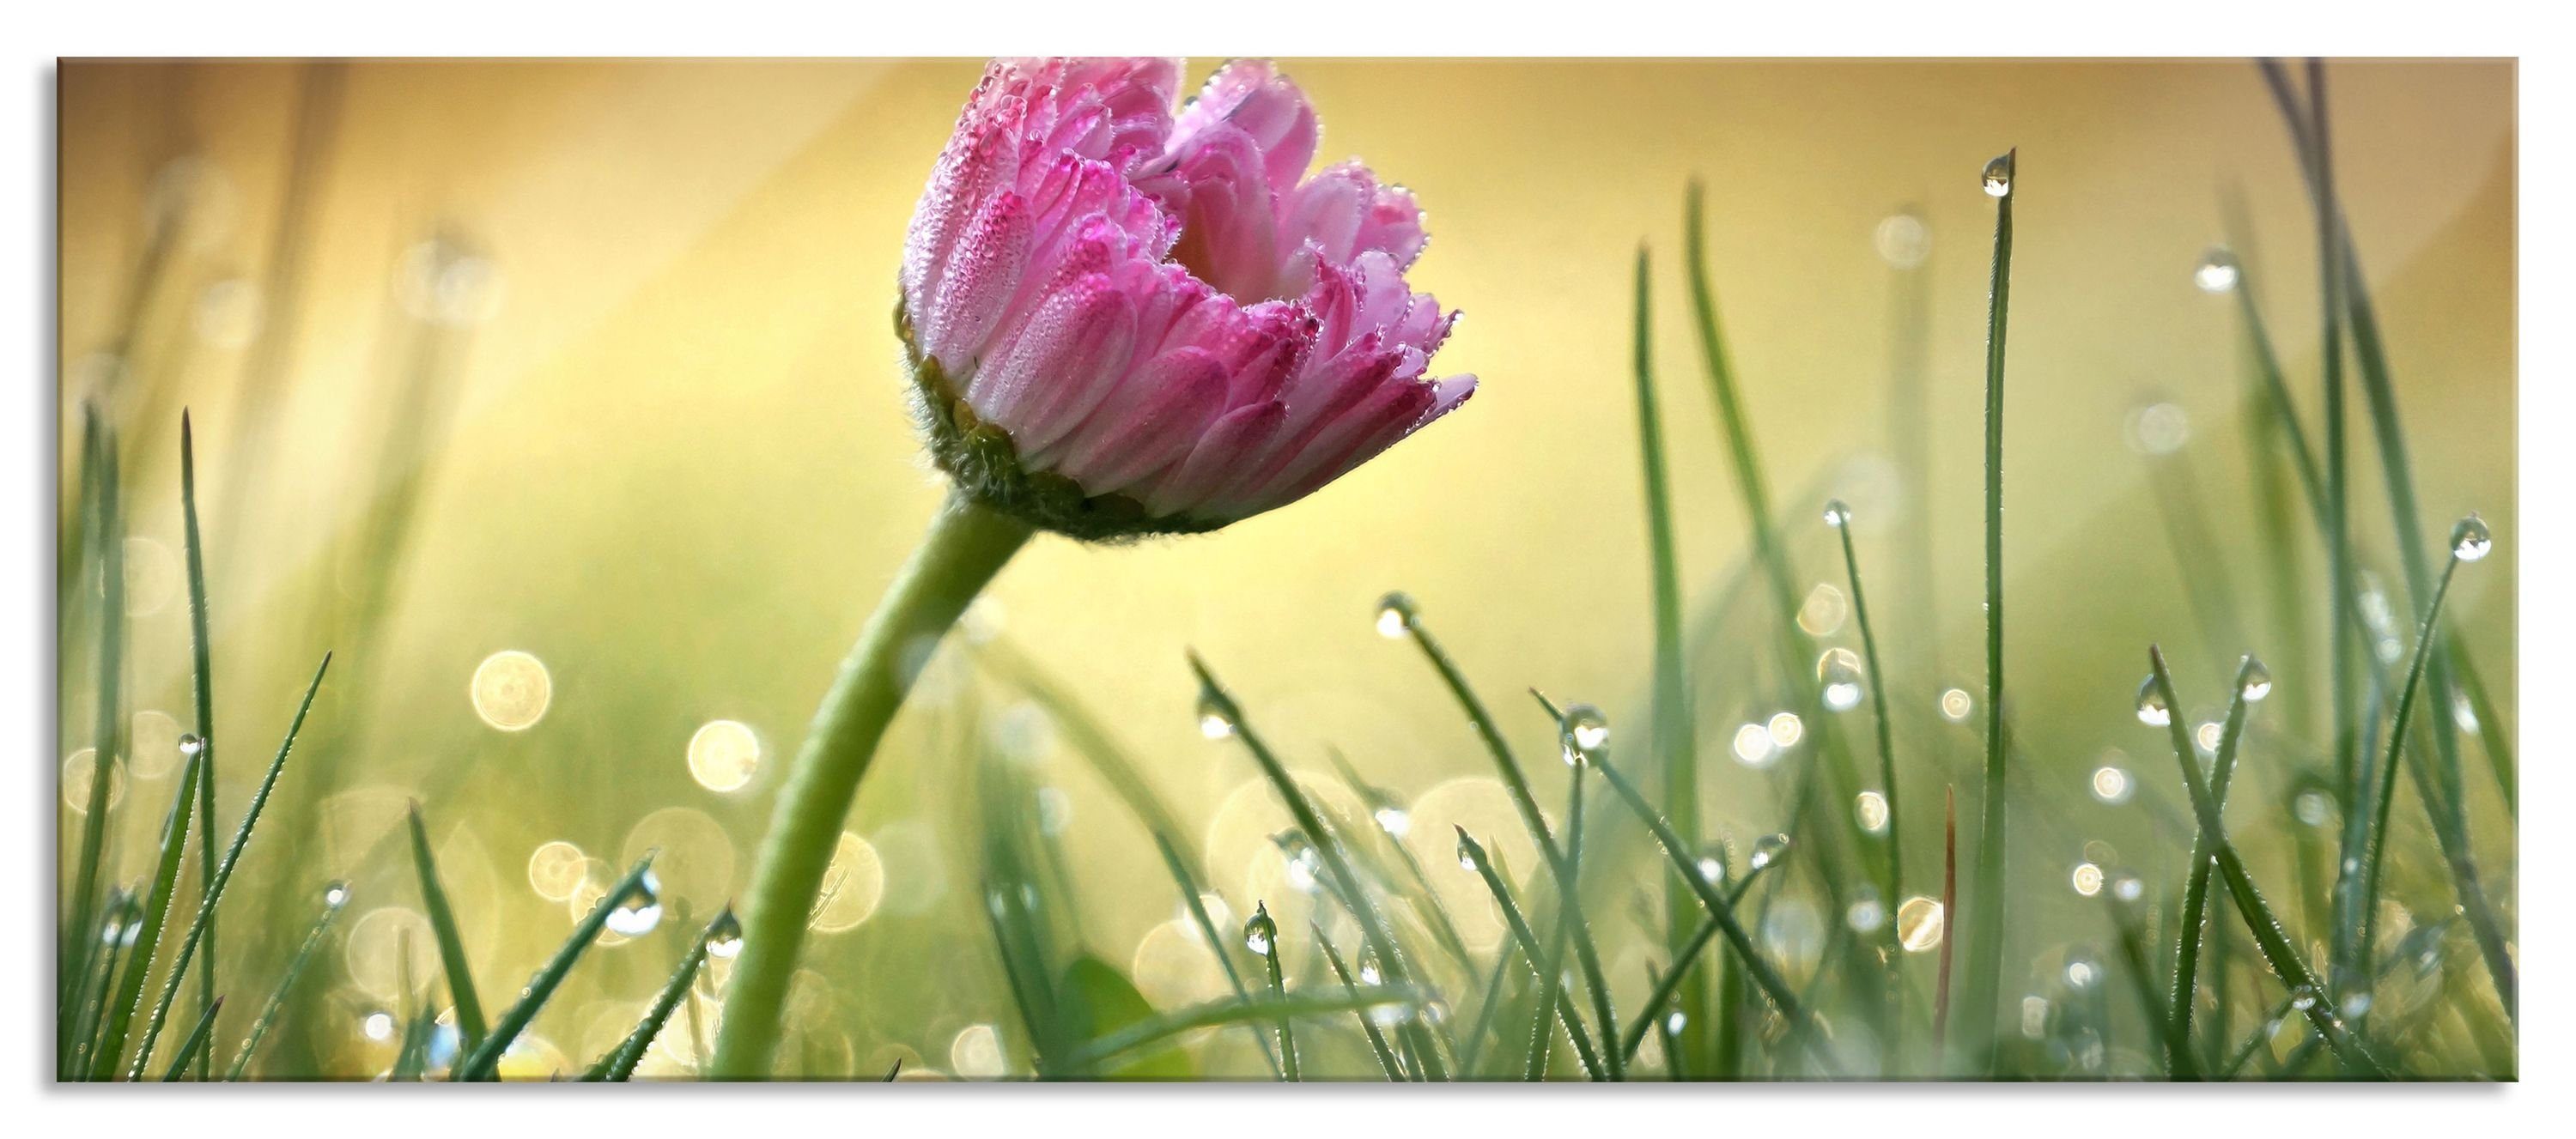 Pixxprint Glasbild rosa Gänseblümchen im Gras, rosa Gänseblümchen im Gras (1 St), Glasbild aus Echtglas, inkl. Aufhängungen und Abstandshalter